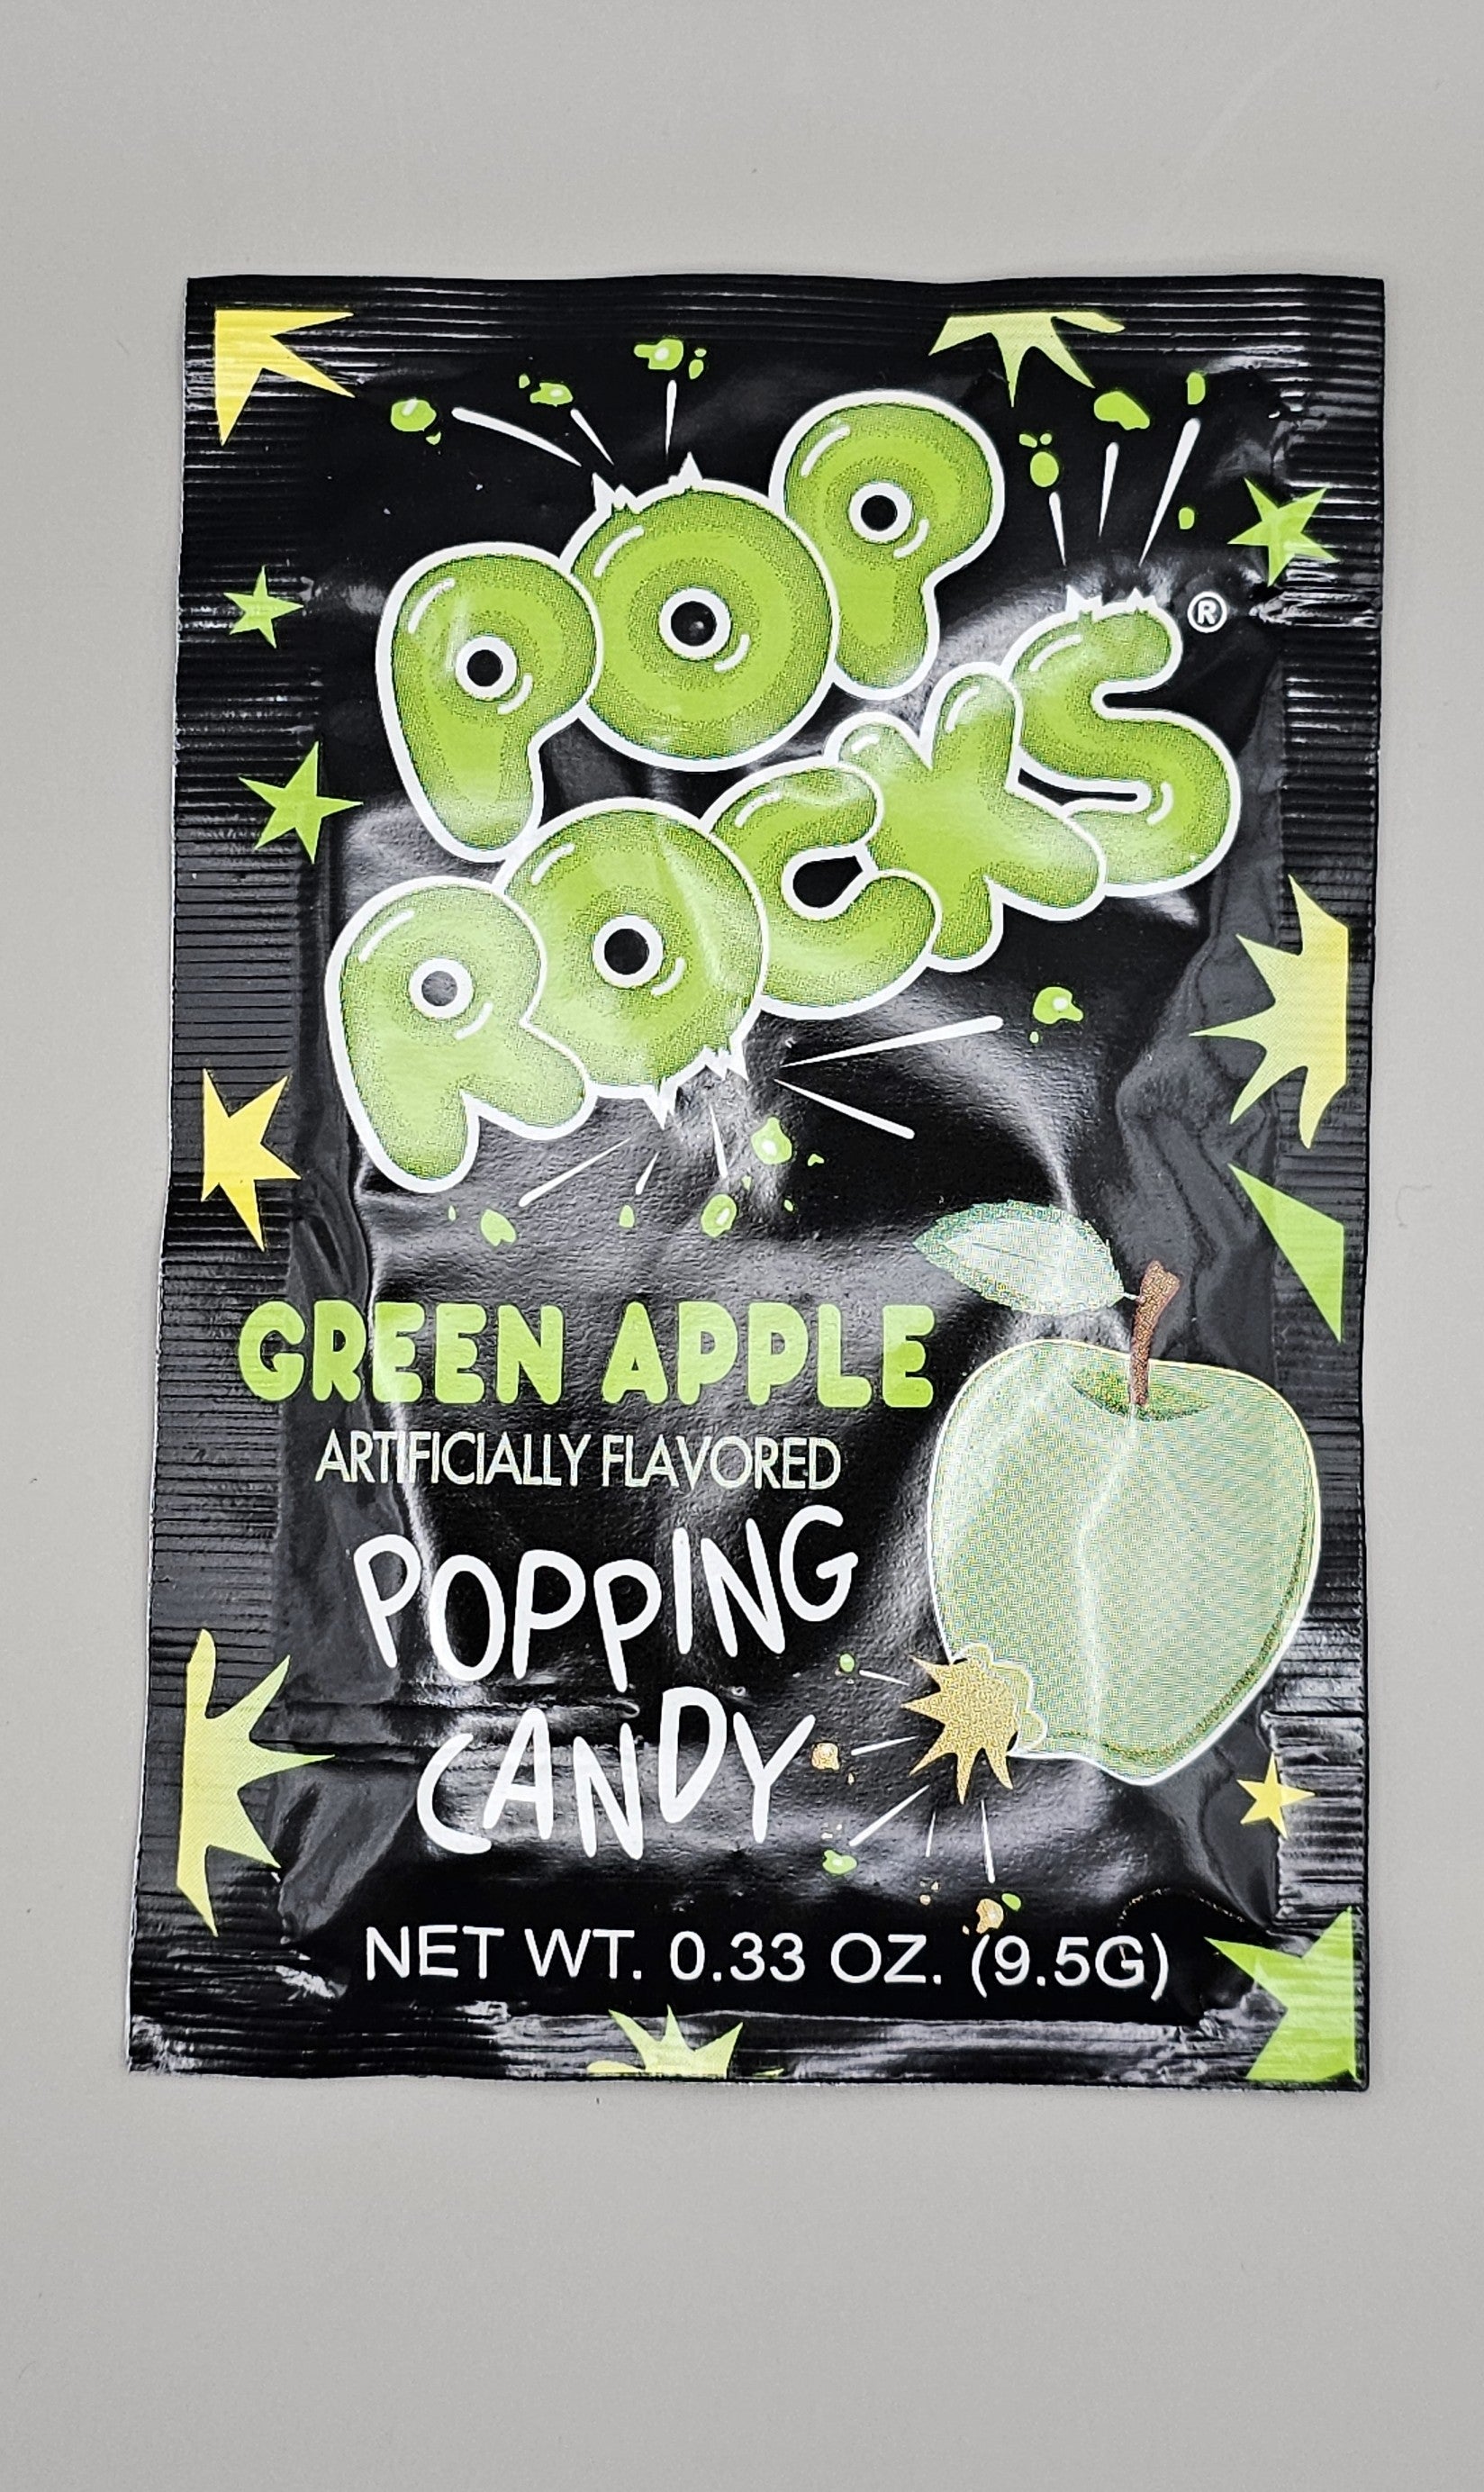 Green apple pop rocks.